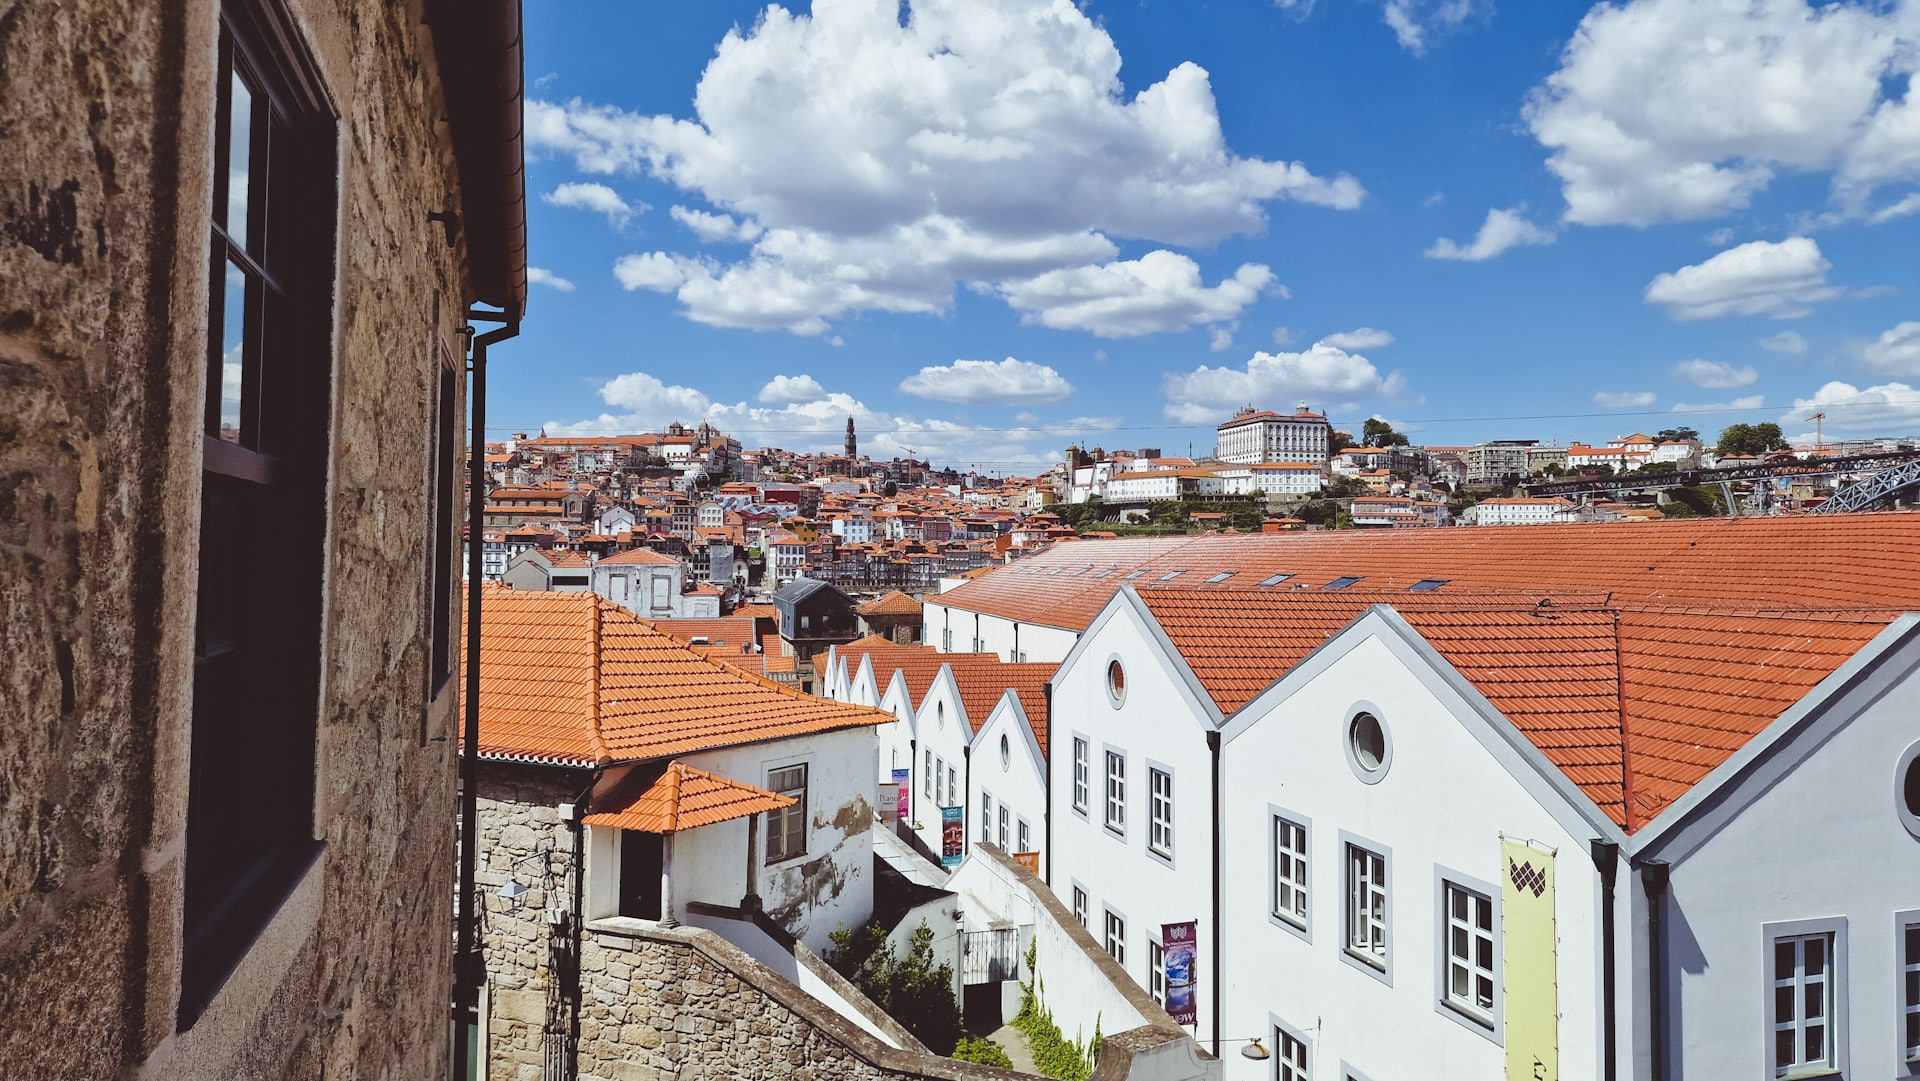 Situada al otro lado del Duero desde el centro de la ciudad, Vila Nova de Gaia es una de las mejores zonas donde dormir en Oporto